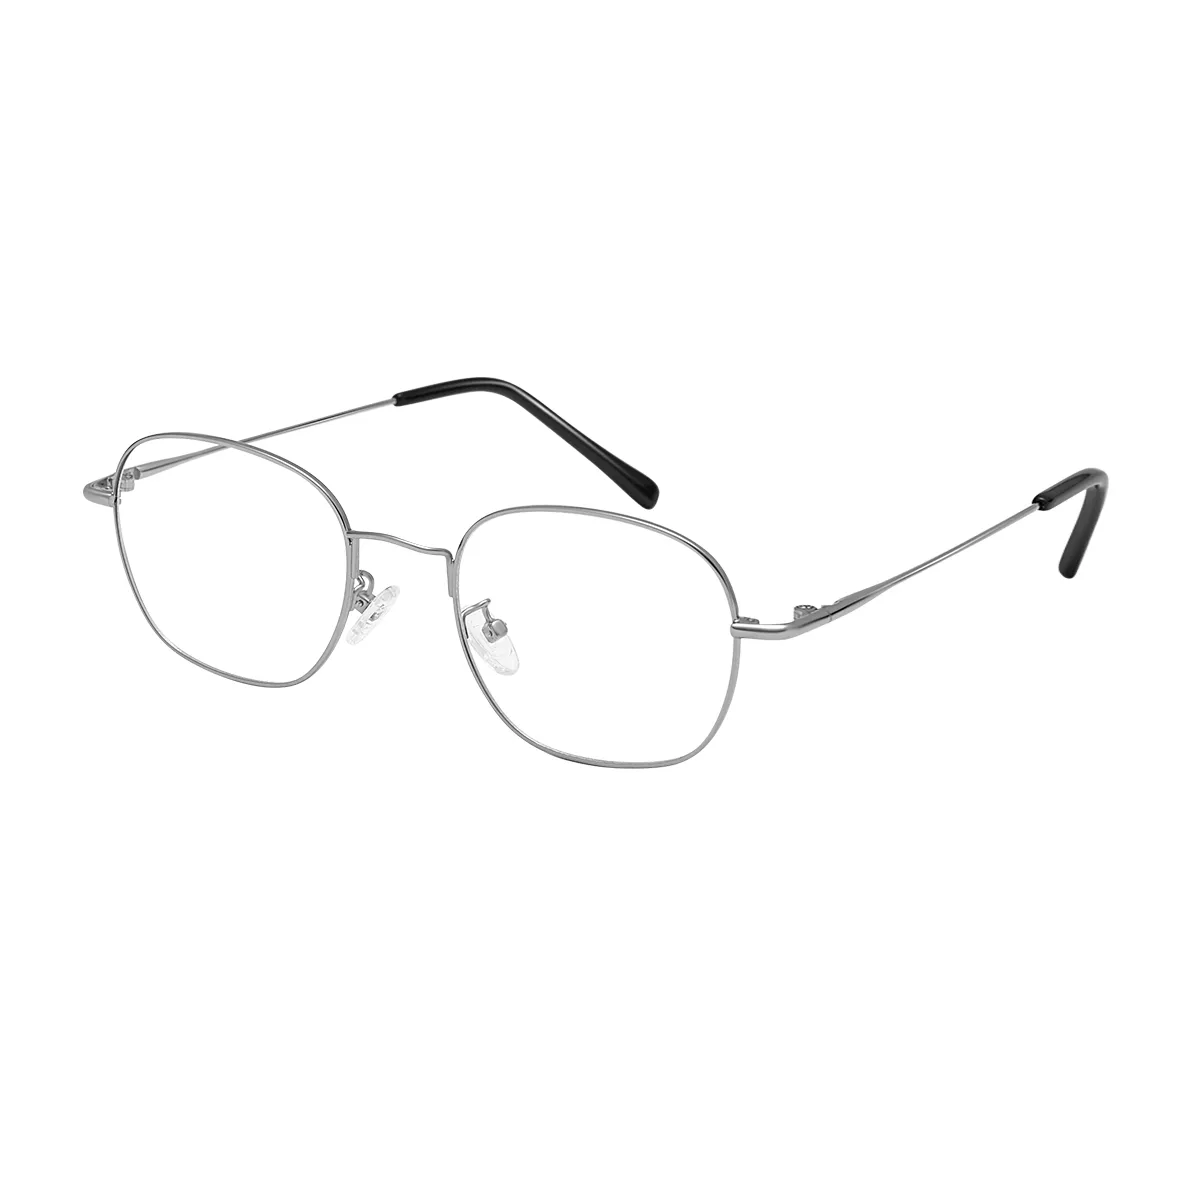 Classic Oval Black Eyeglasses for Men